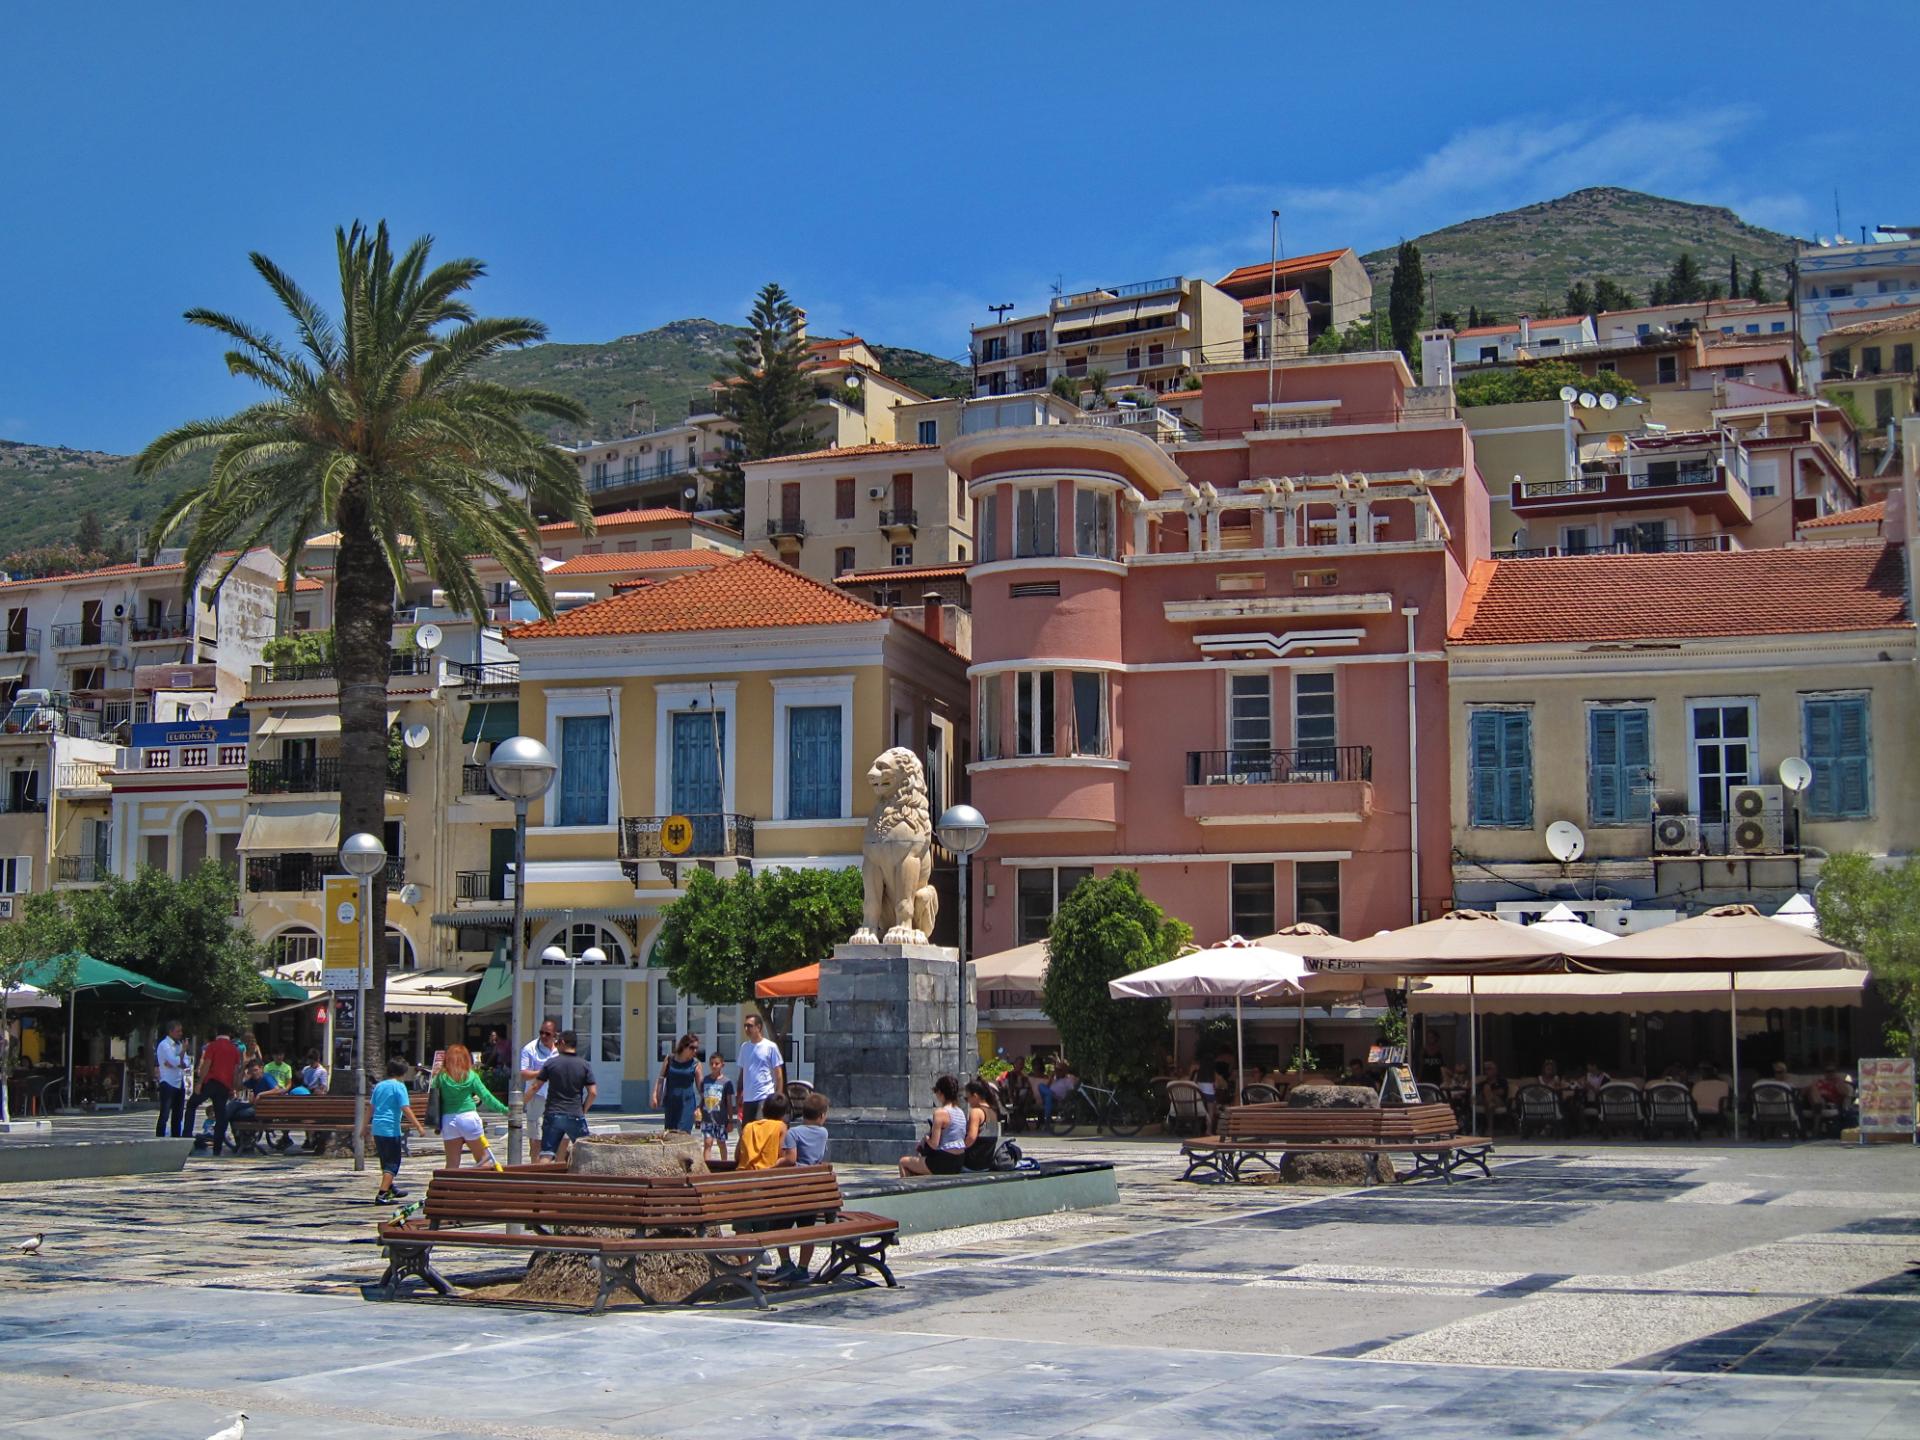 Samos (Sisam)